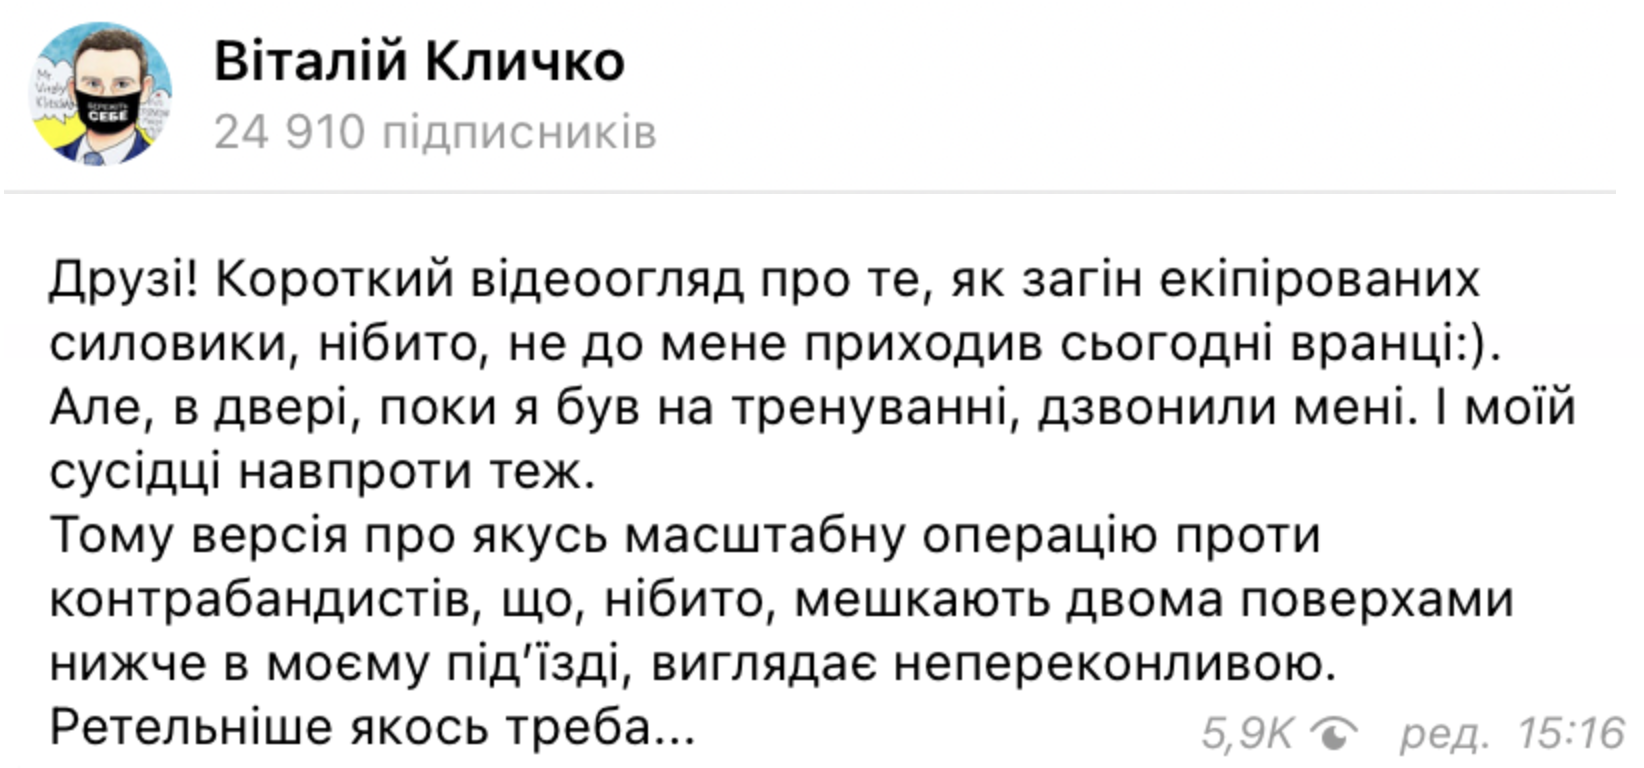 Пост Кличко в телеграм-канале